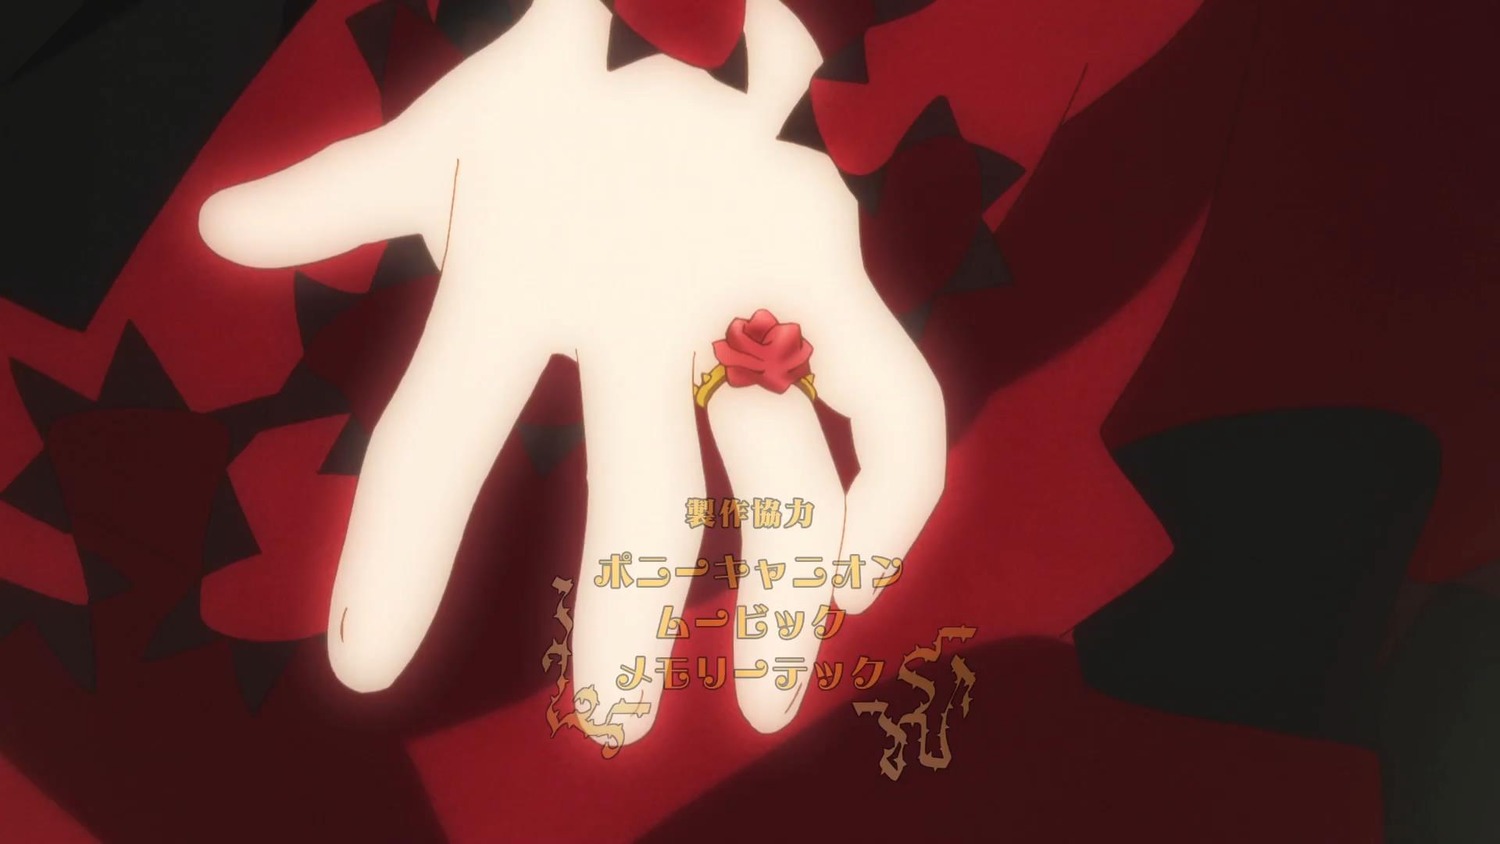 1girl dress flower hands image red_flower rose shinku solo